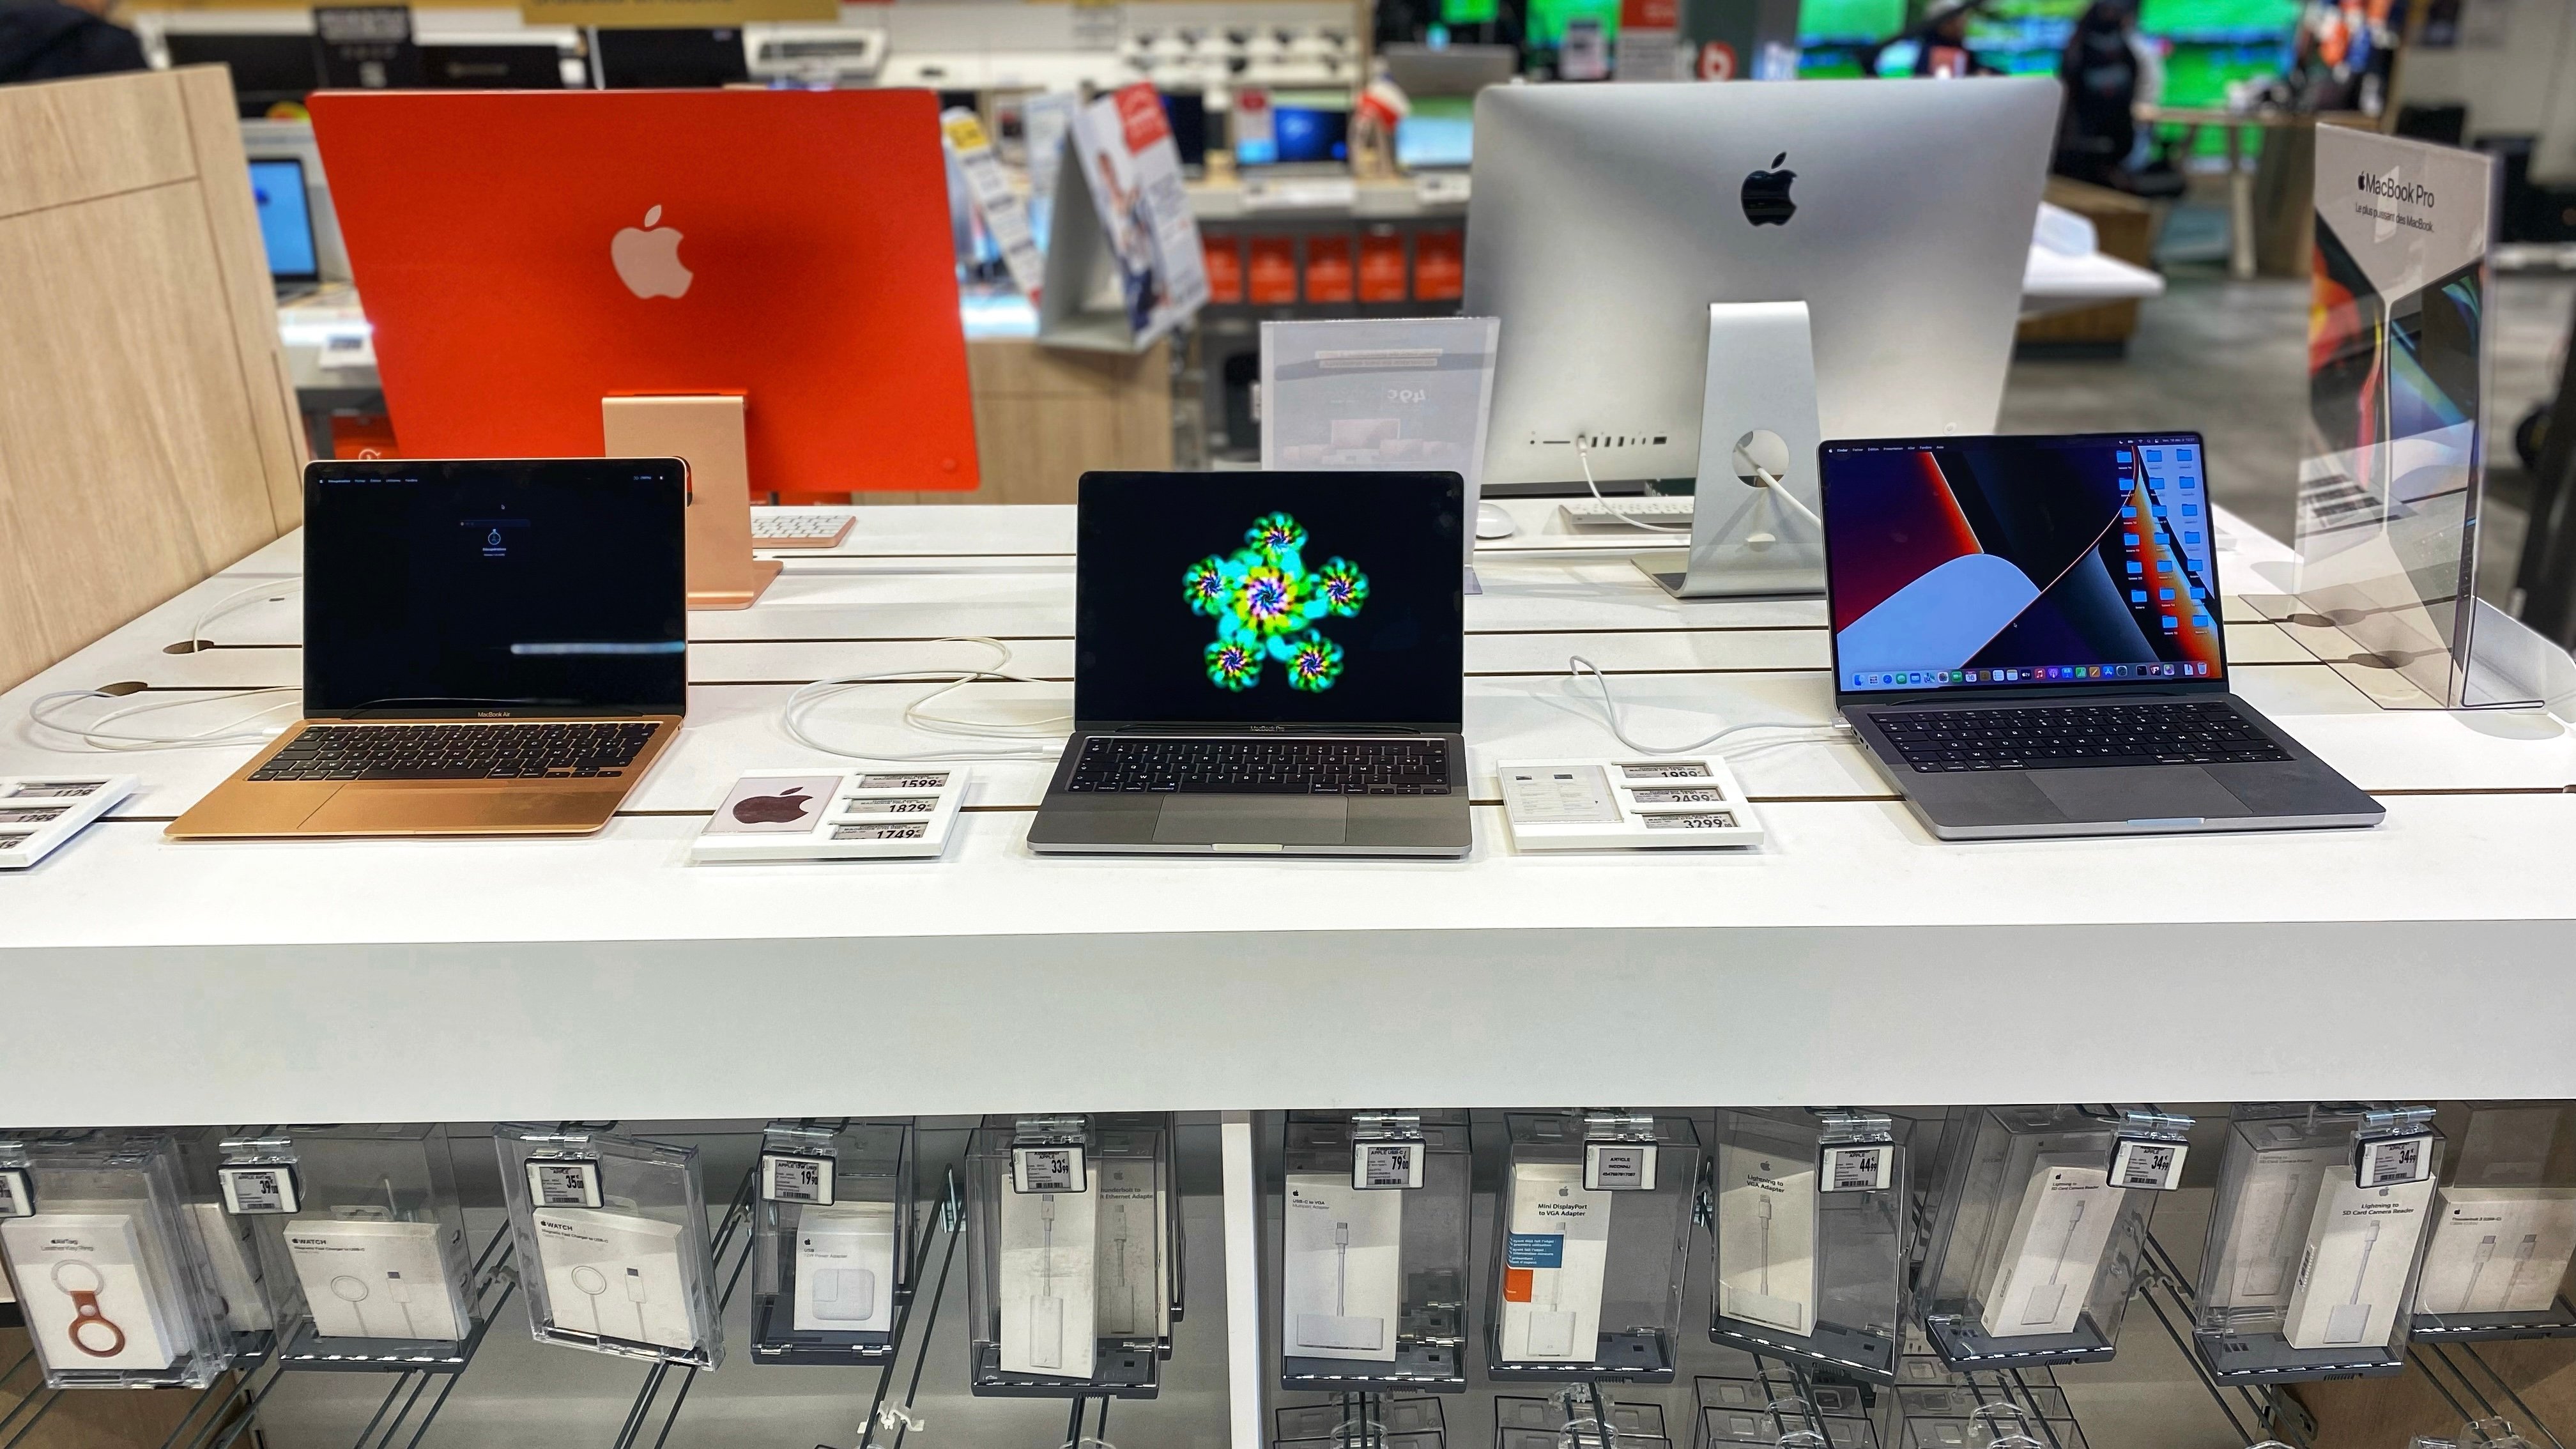 Venez découvrir notre gamme de produits Apple dans votre magasin Boulanger Alès. Macbook, Macbook Pro et iMac sont disponible à la vente.